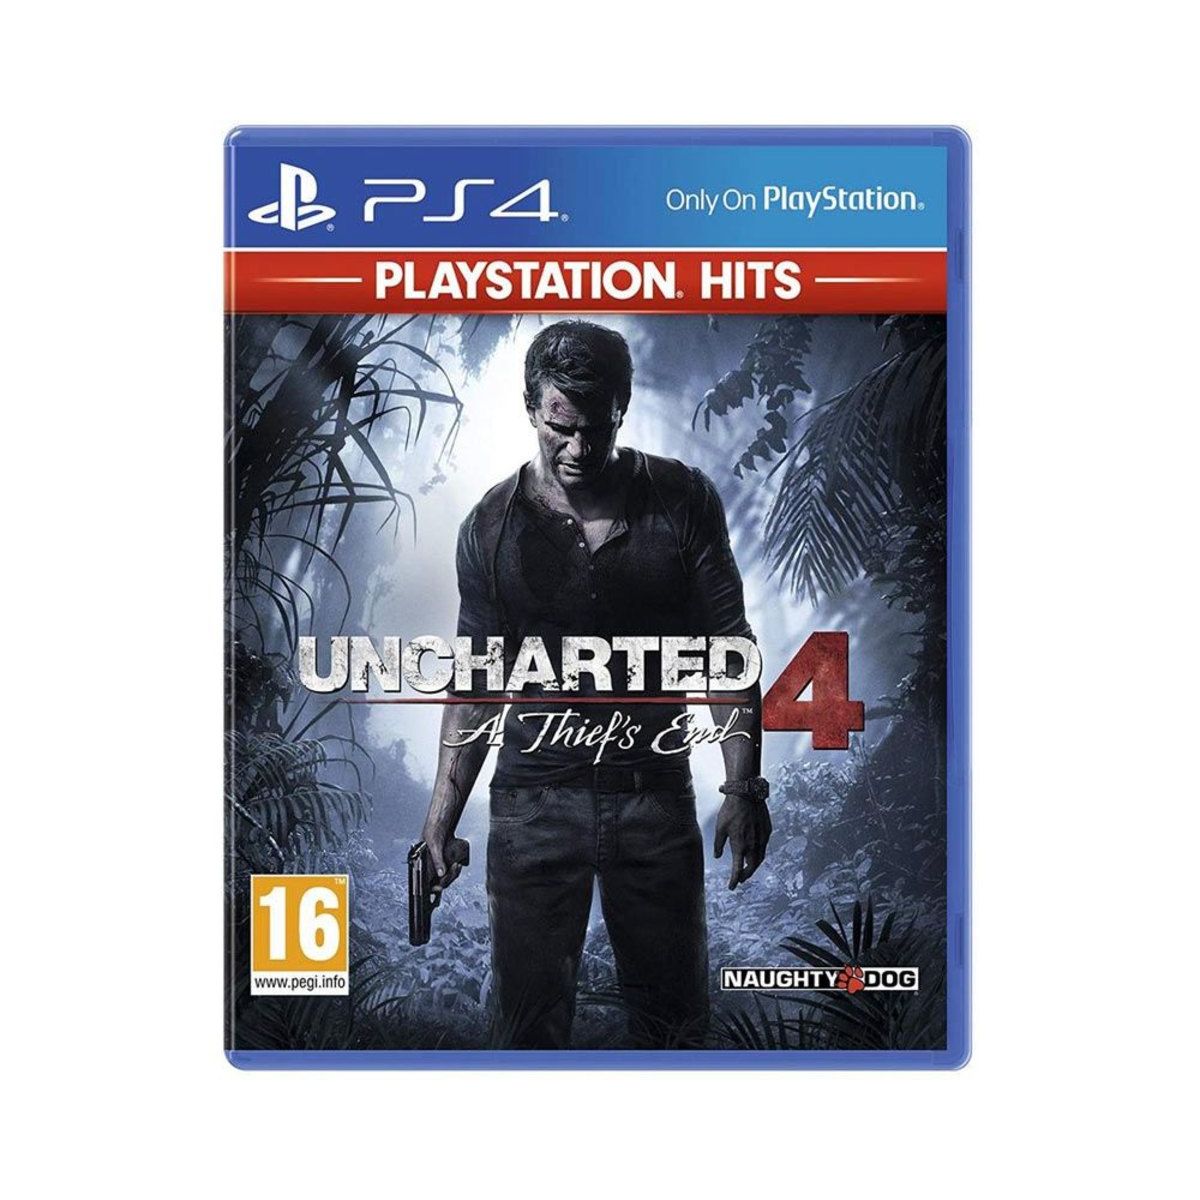 Uncharted: Os 10 melhores momentos da franquia PlayStation